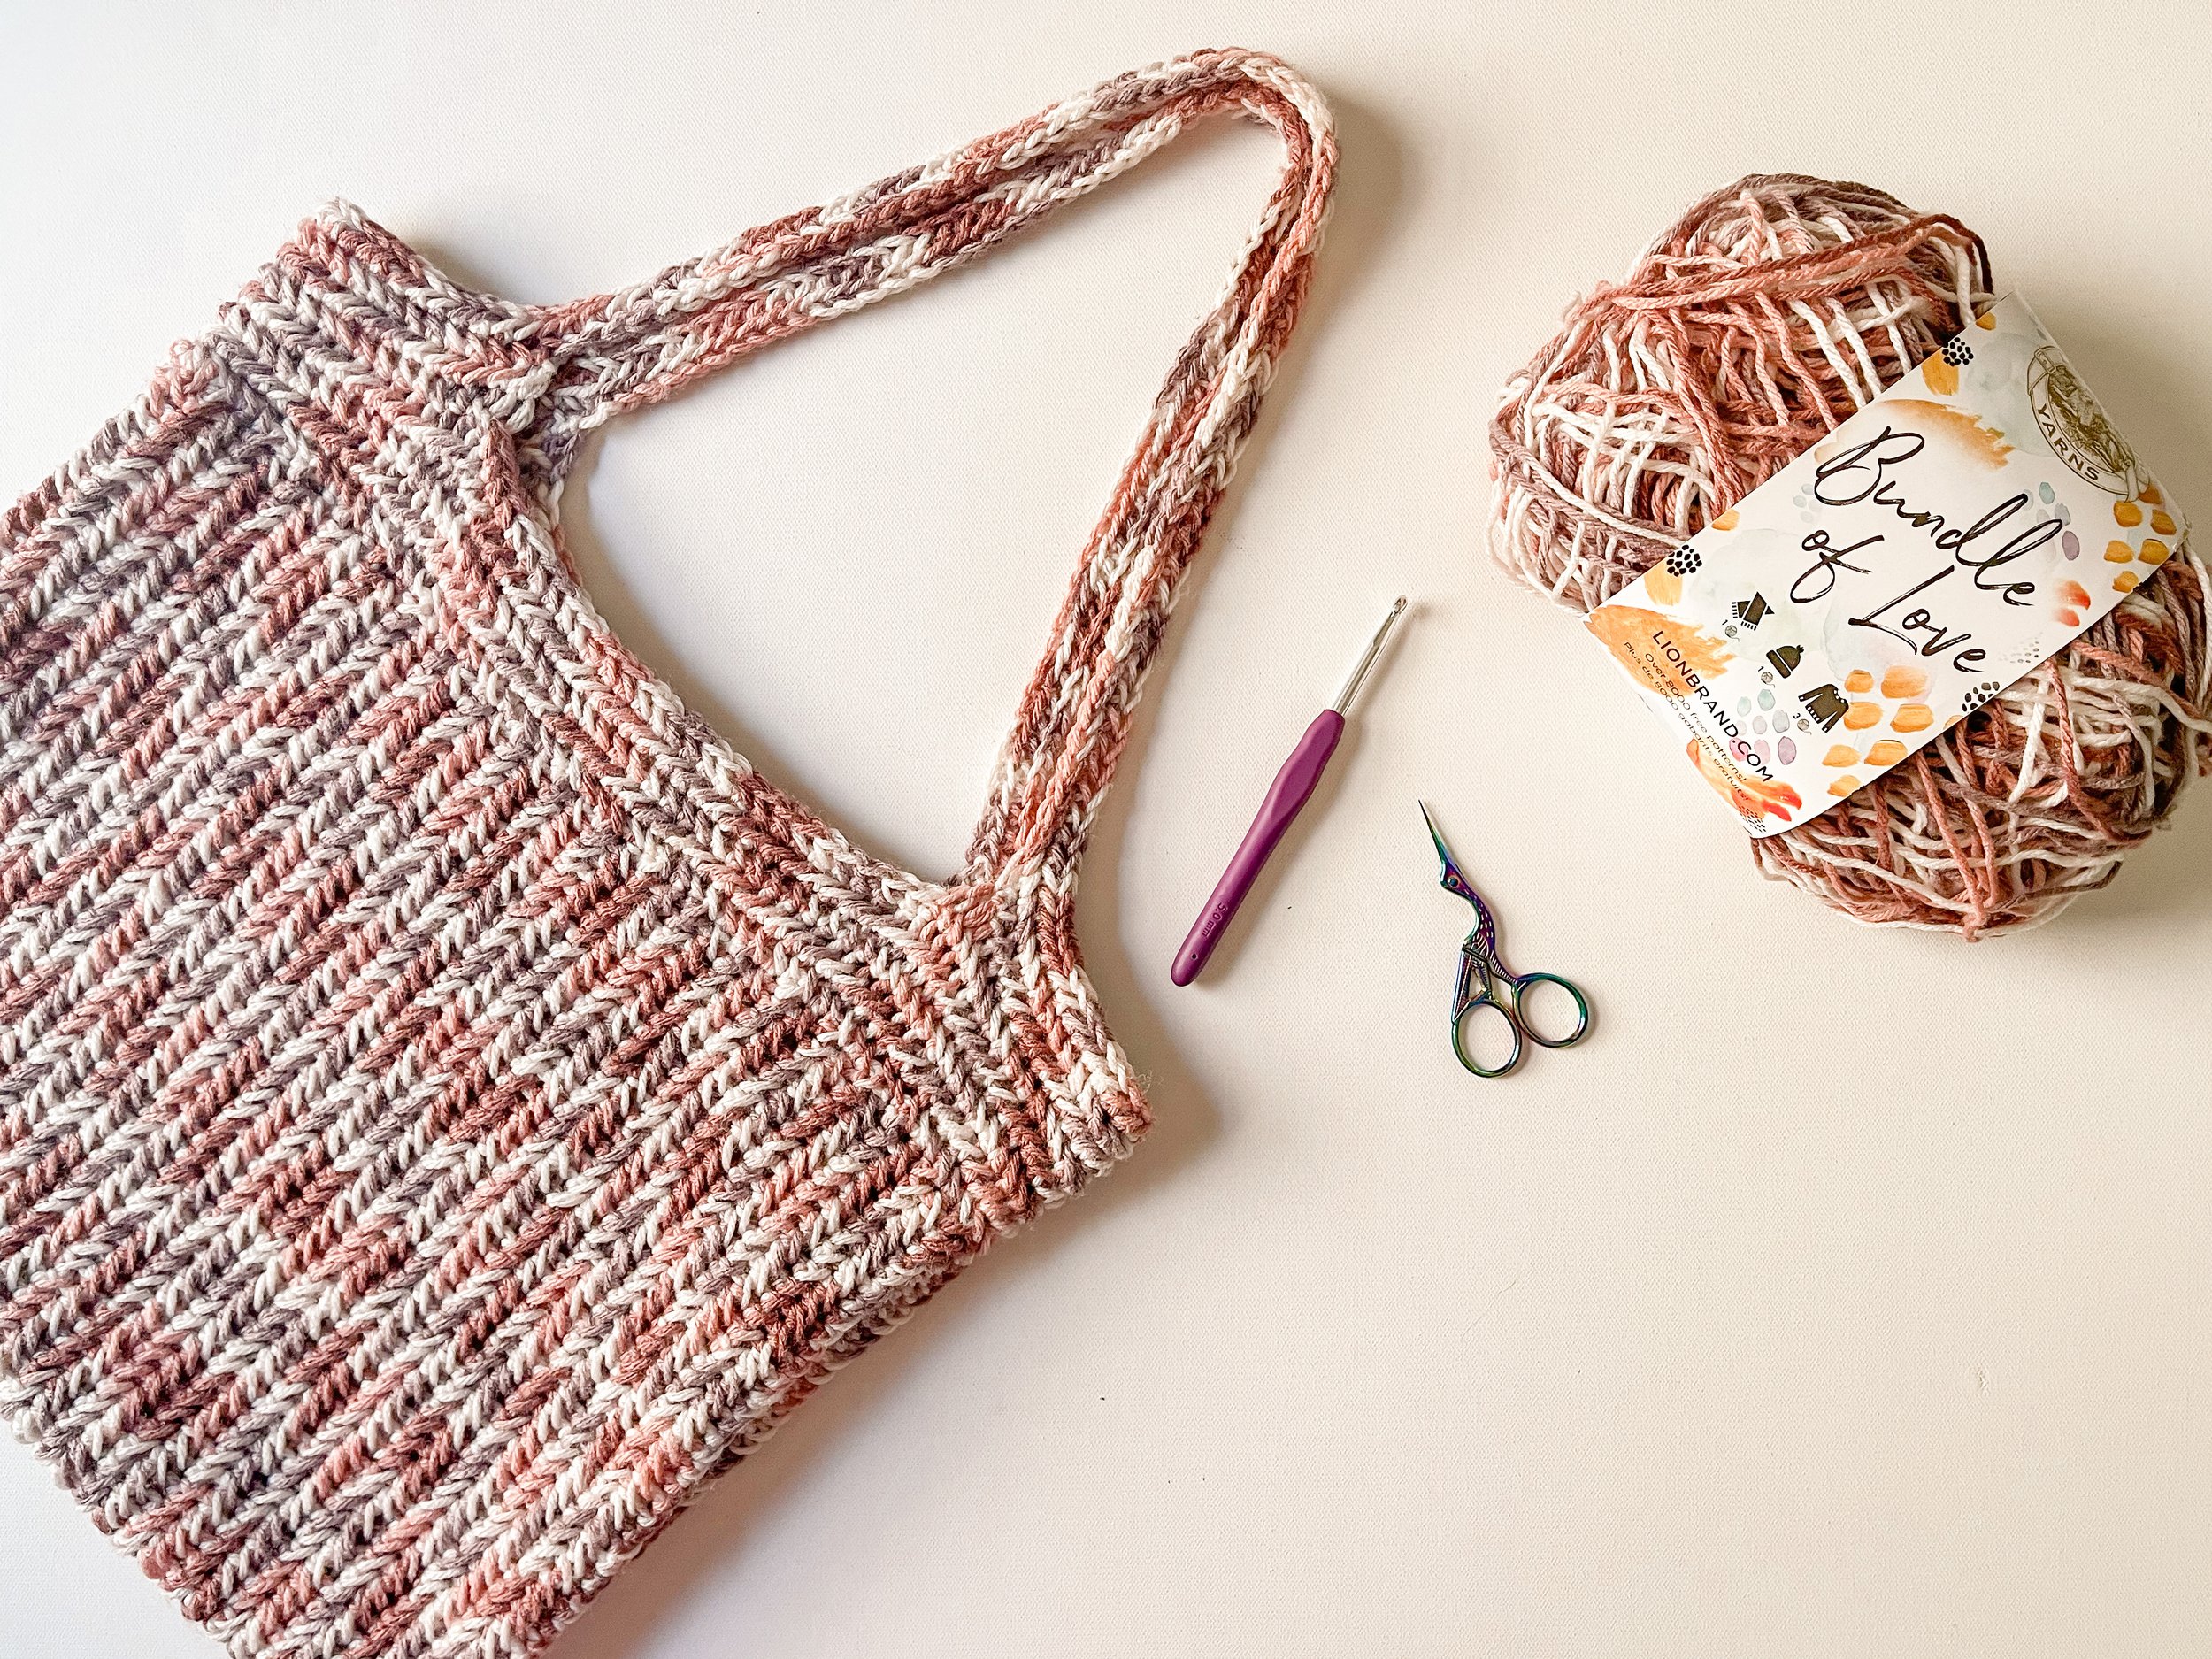 Crochet bag pattern for women Crochet summer handbag instr - Inspire Uplift